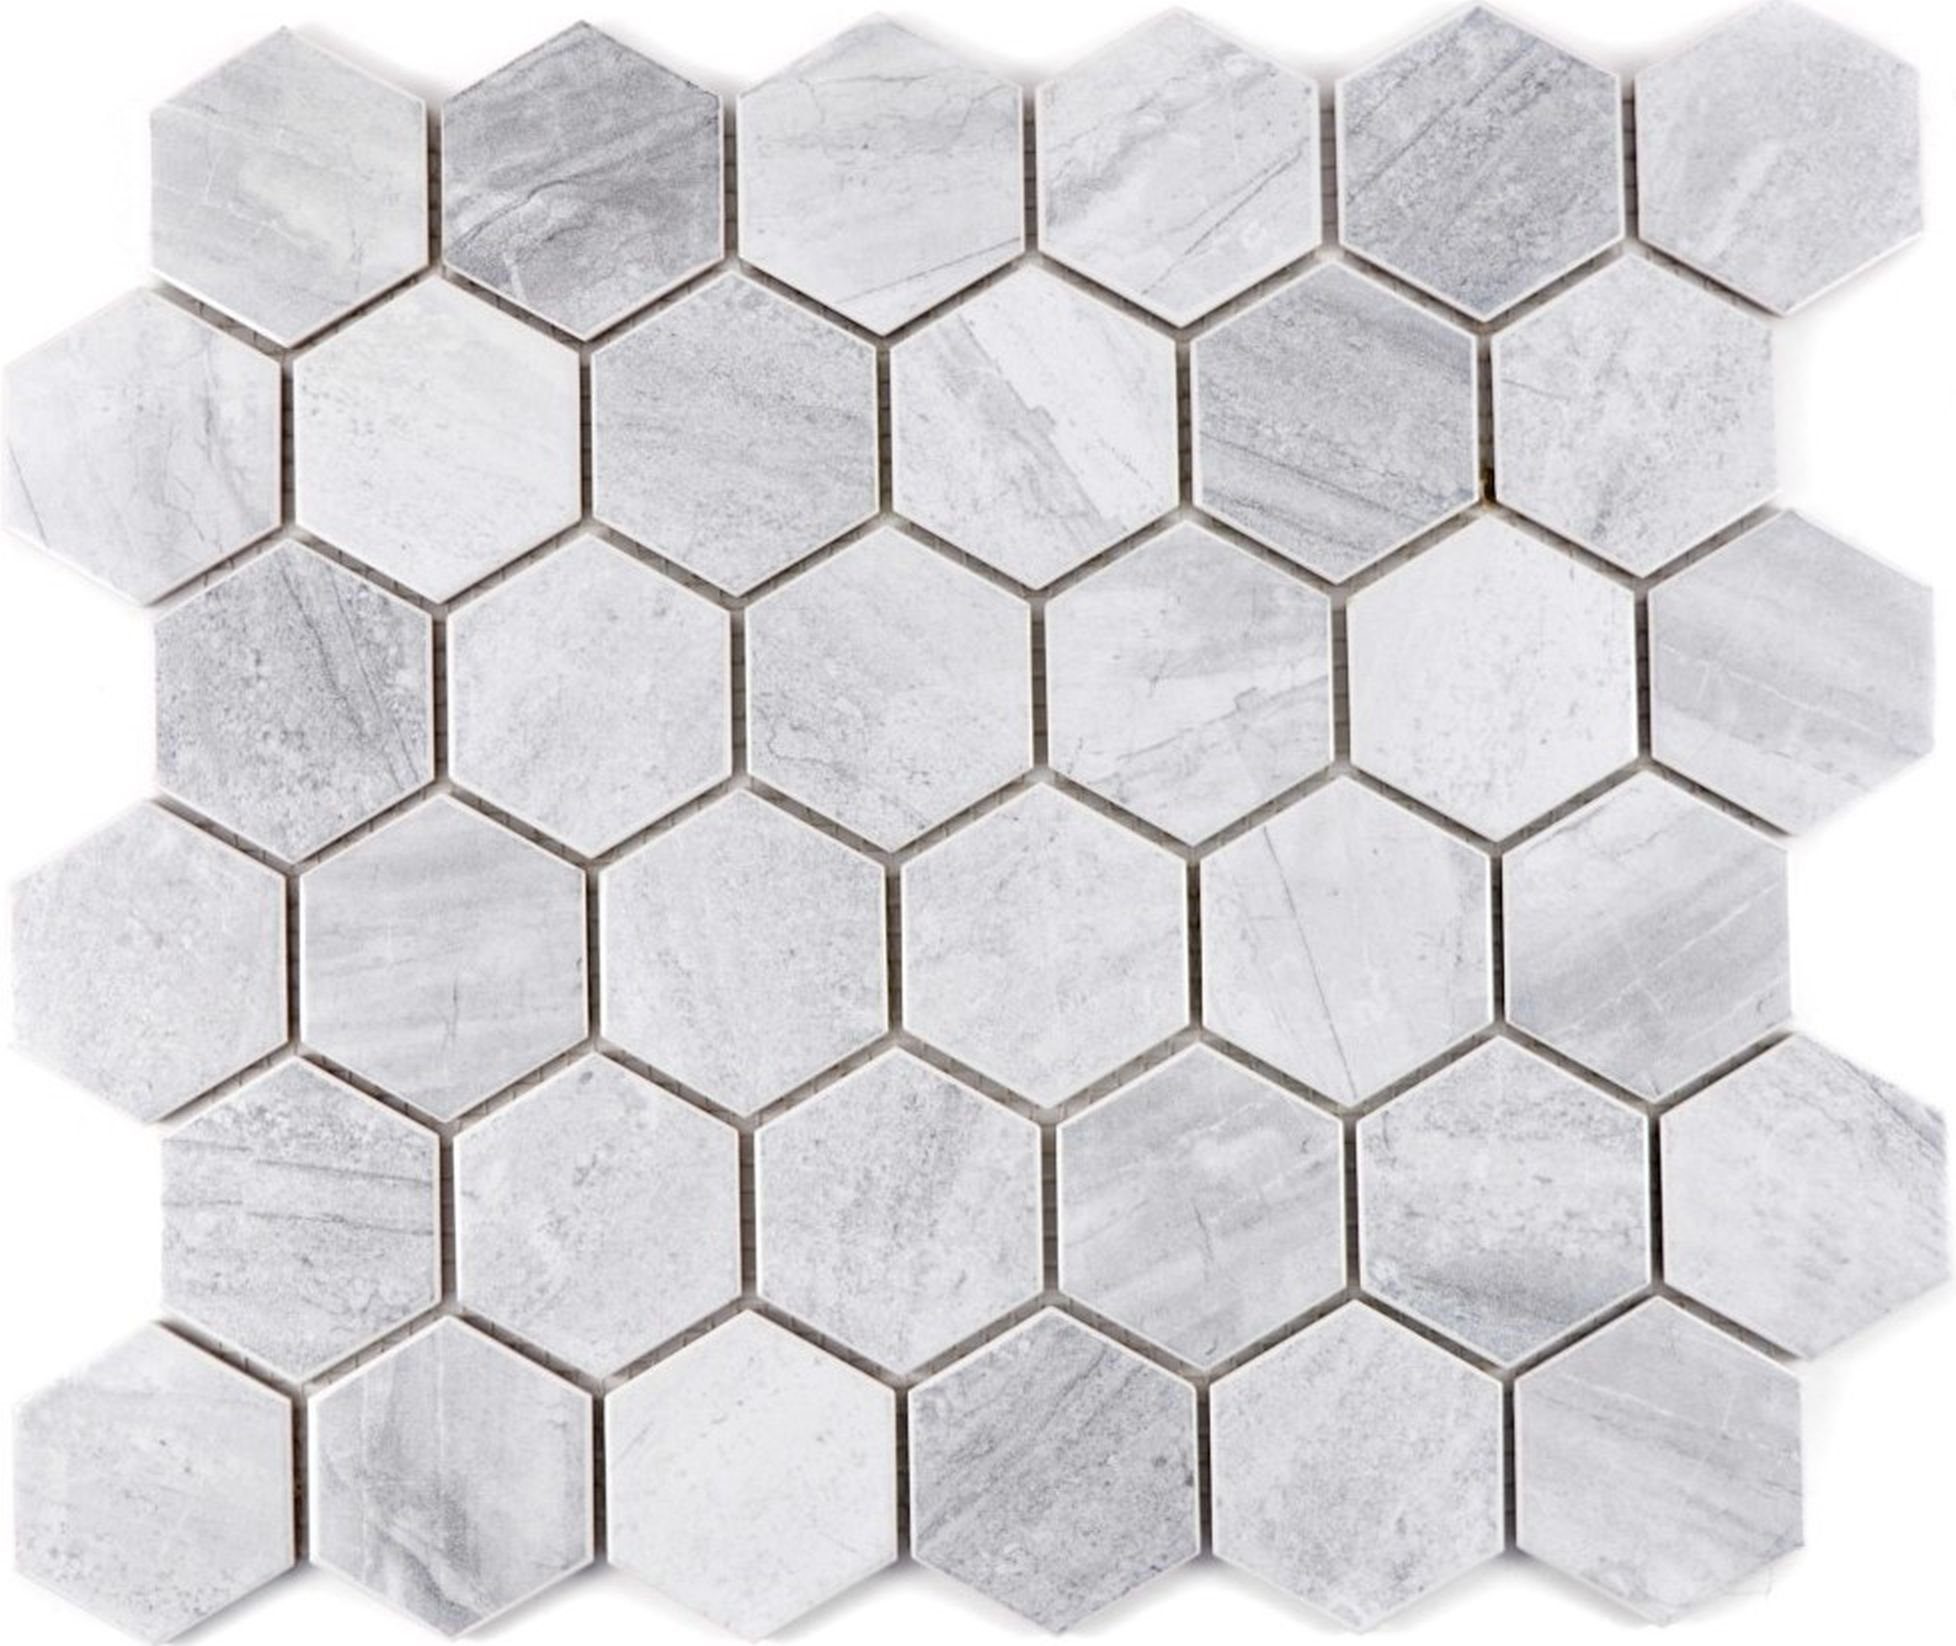 Mosani Mosaikfliesen Hexagon Keramikmosaik Mosaikfliesen grau matt / 10 Matten | Fliesen